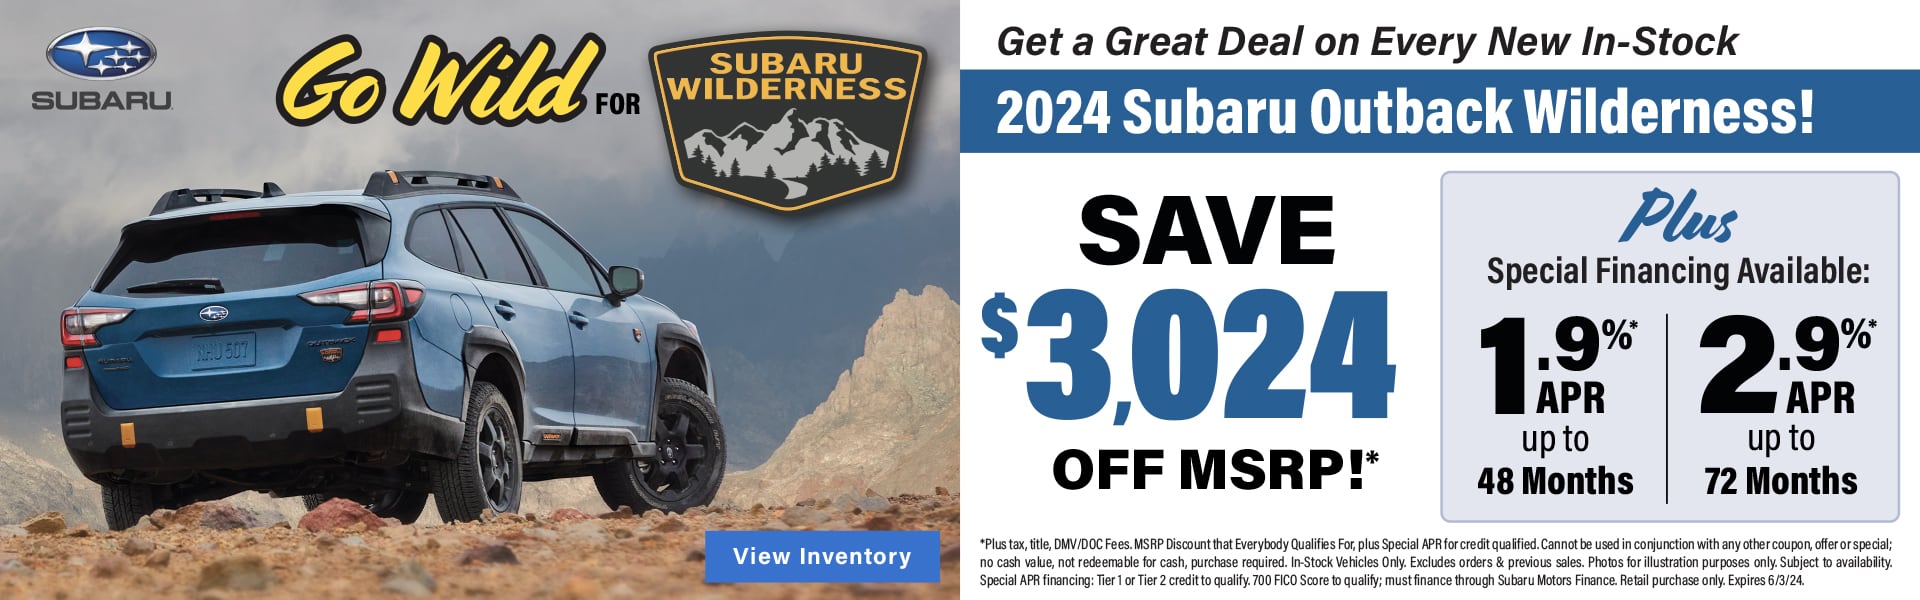 Go Wild for Subaru Outback Wilderness!